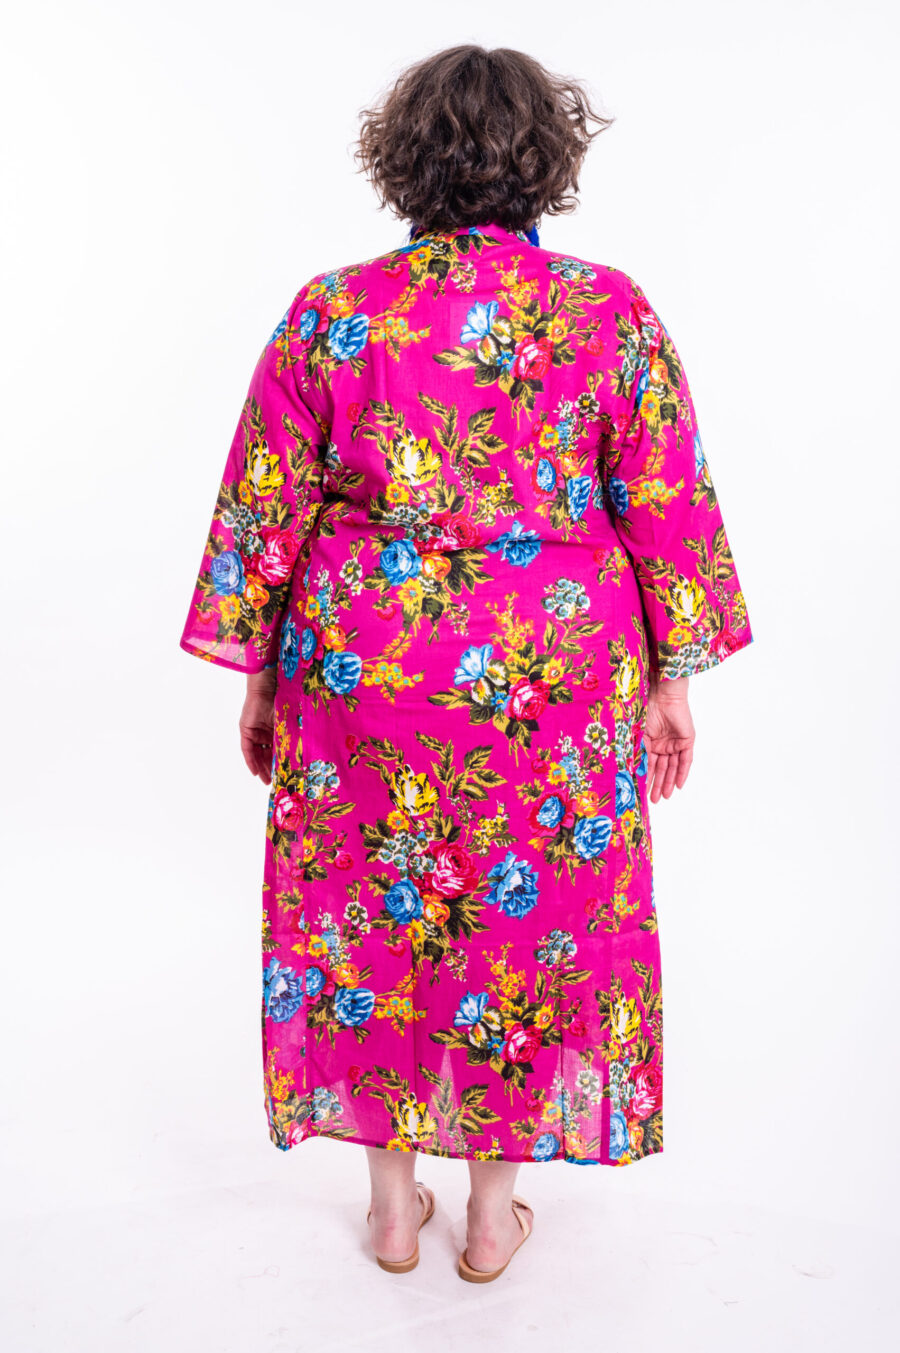 גלביה לנשים | גלבייה בעיצוב ייחודי - שמלה ורודה עם הדפס פרחים צבעוני